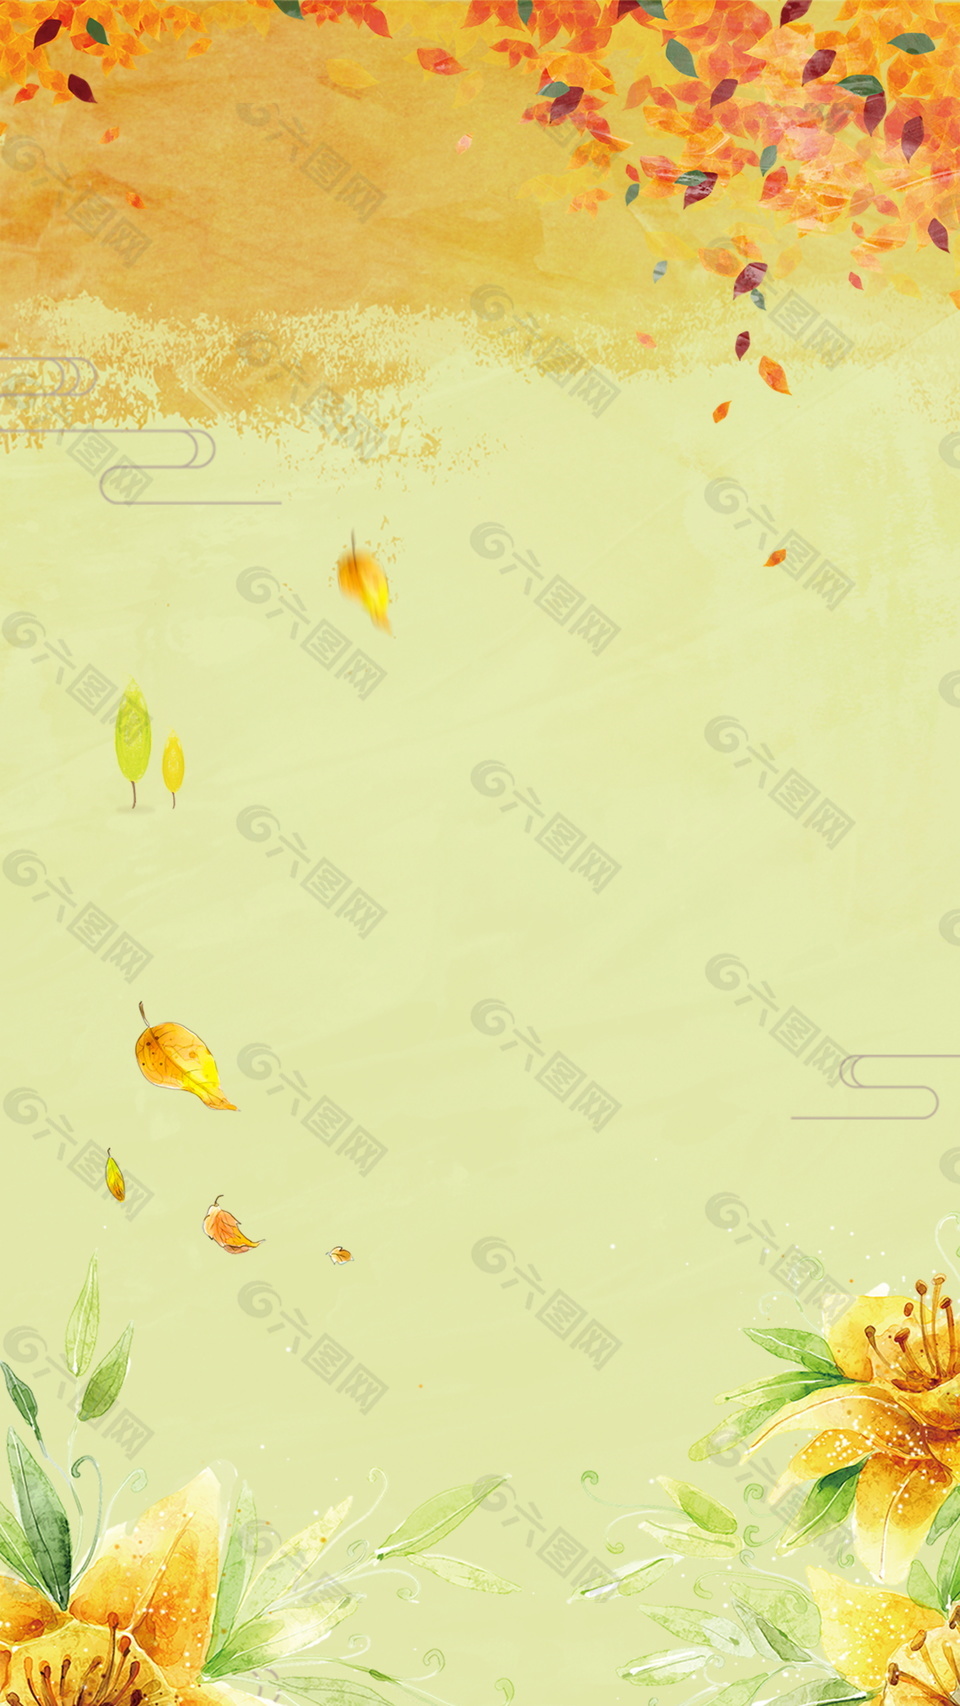 彩绘秋季落叶背景素材